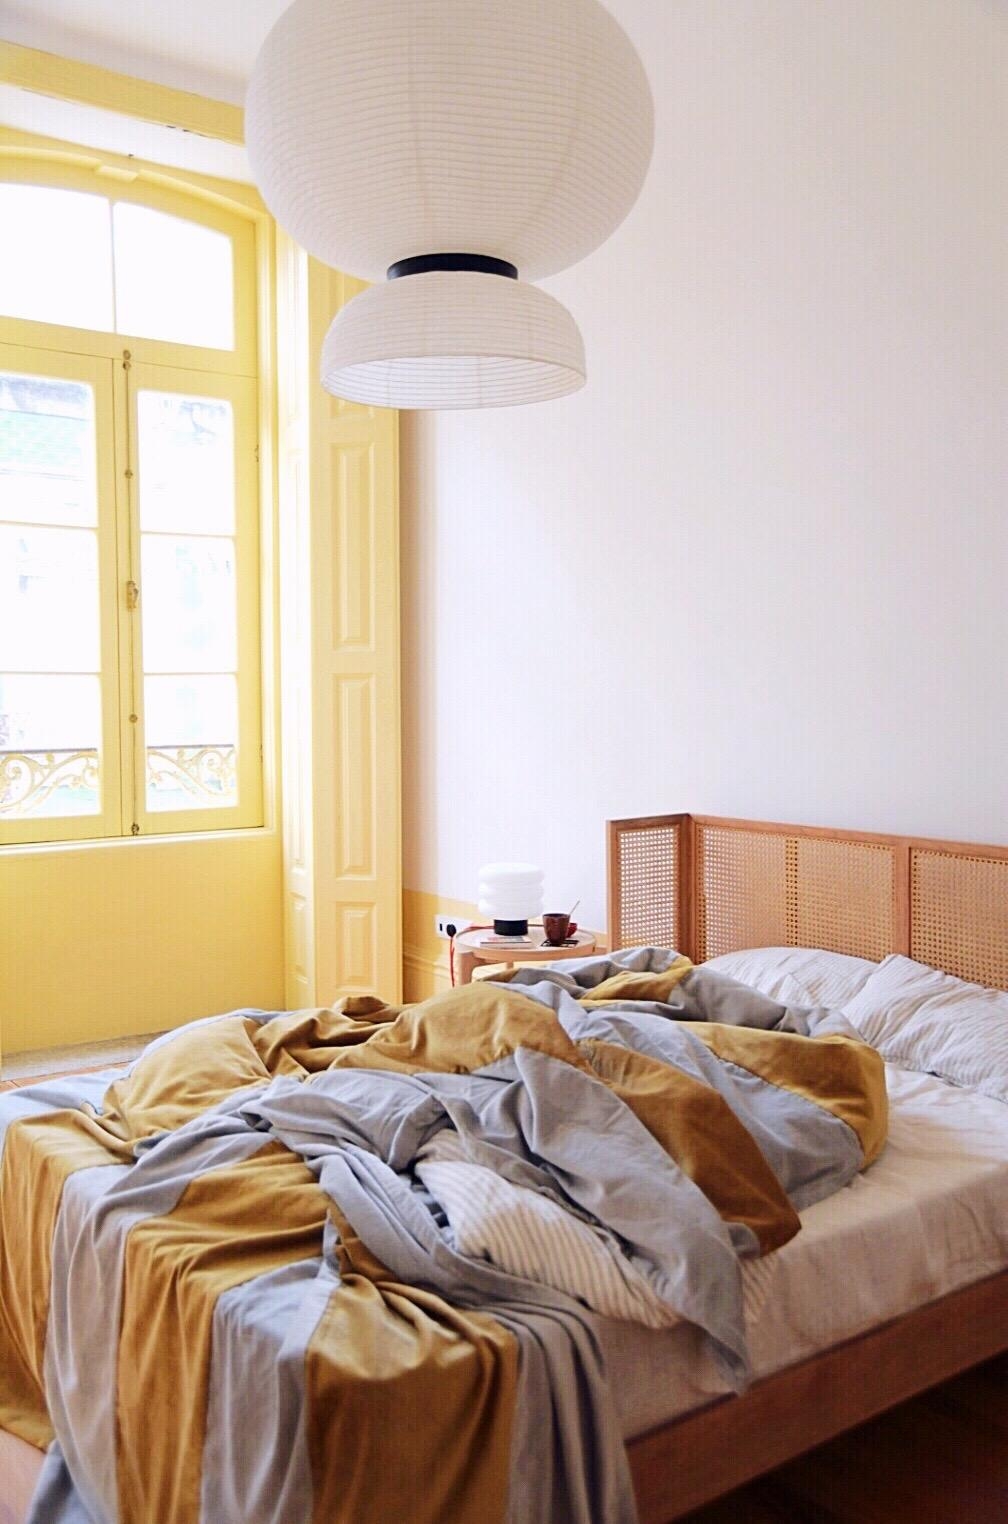 Unser Portugiesisches Schlafzimmer - noch nicht fertig gestaltet, aber auch so schön recht einladend, oder? 
#bedroom 